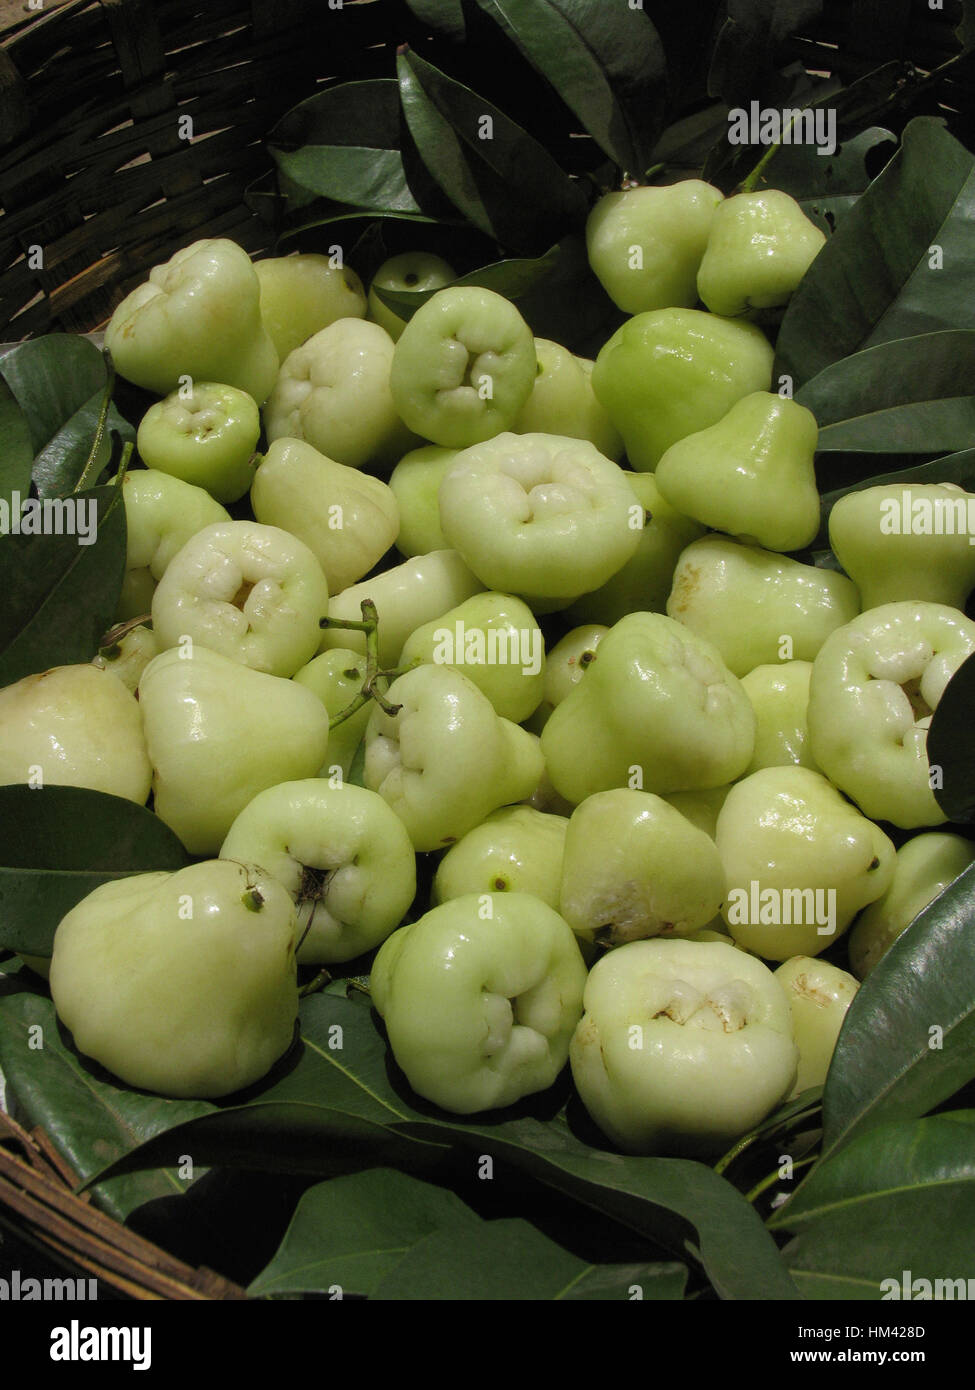 Les pommes de l'eau. Syzygium samarangense est une espèce végétale de la famille des Myrtaceae originaire d'une plus grande des Sundarbans Banque D'Images